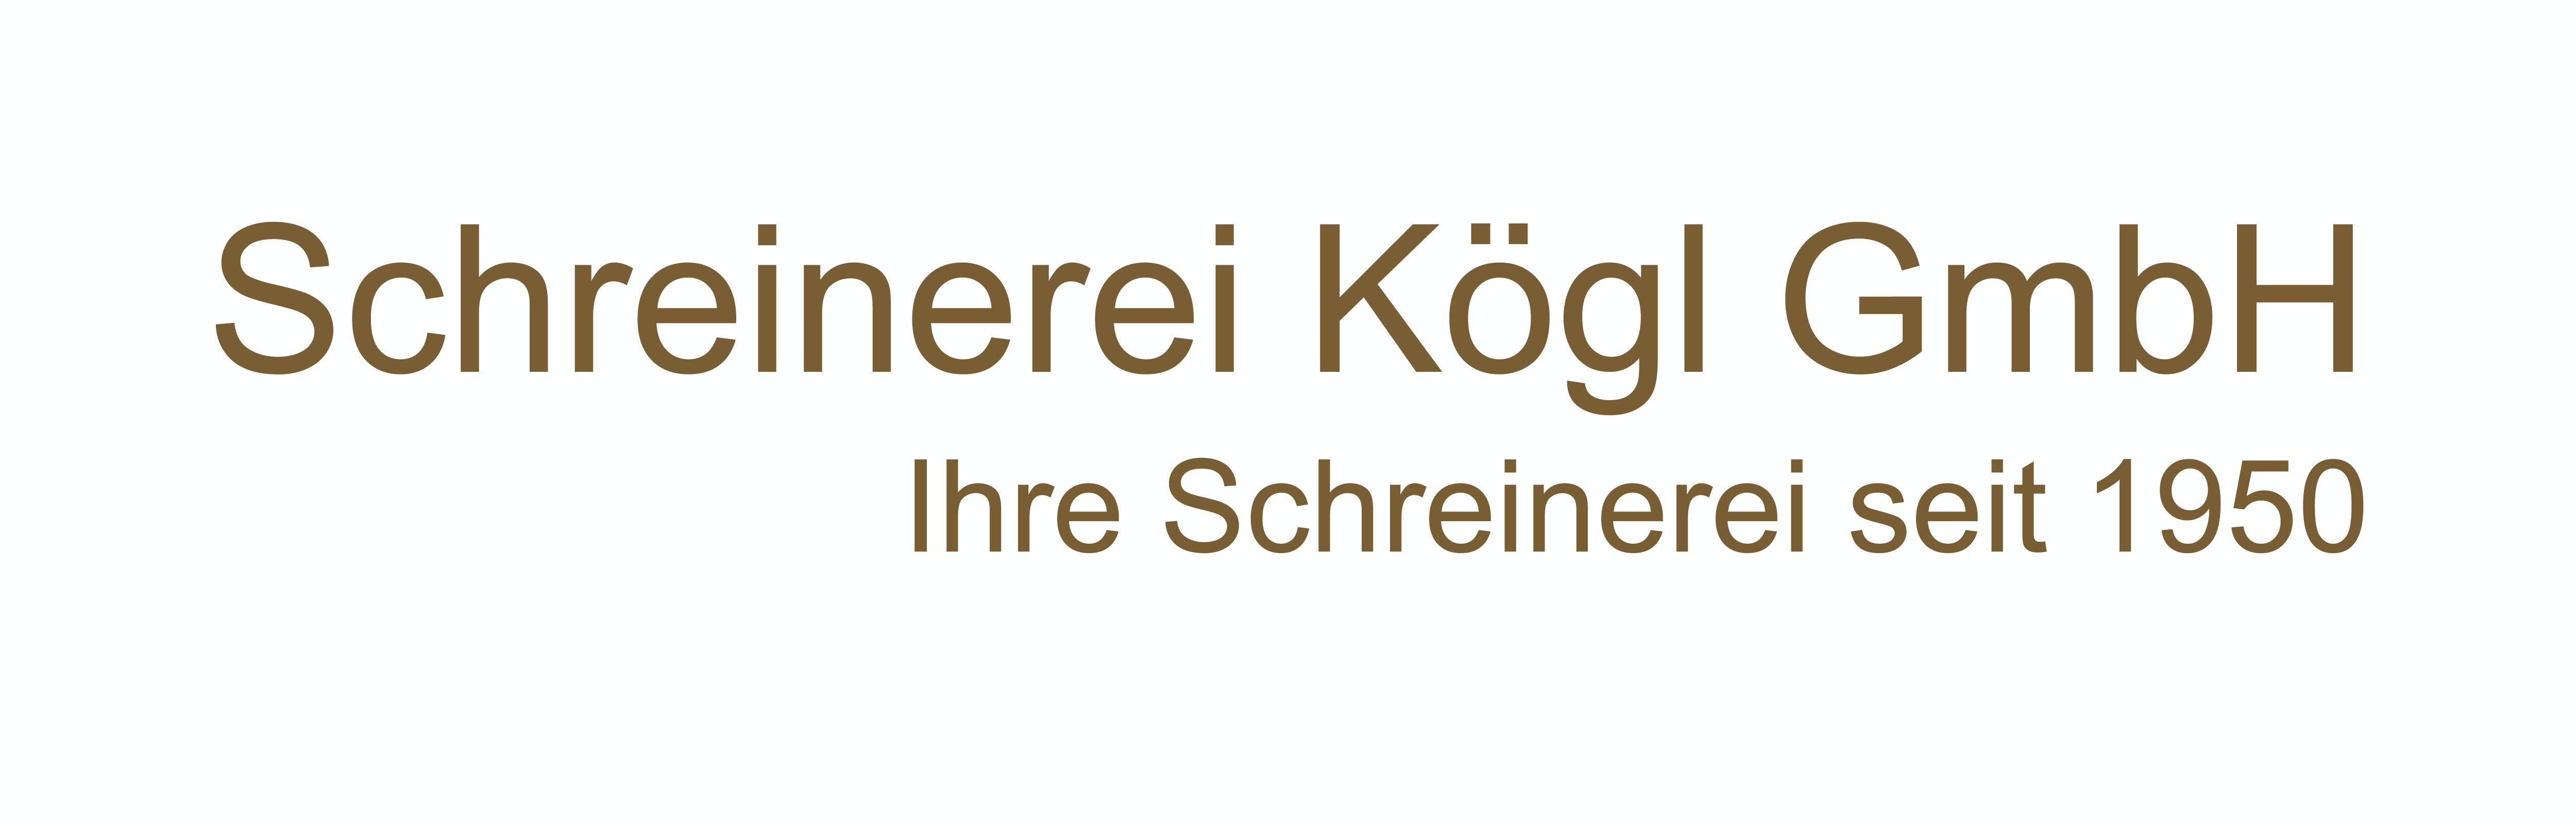 Schreinerei-Kögl GmbH